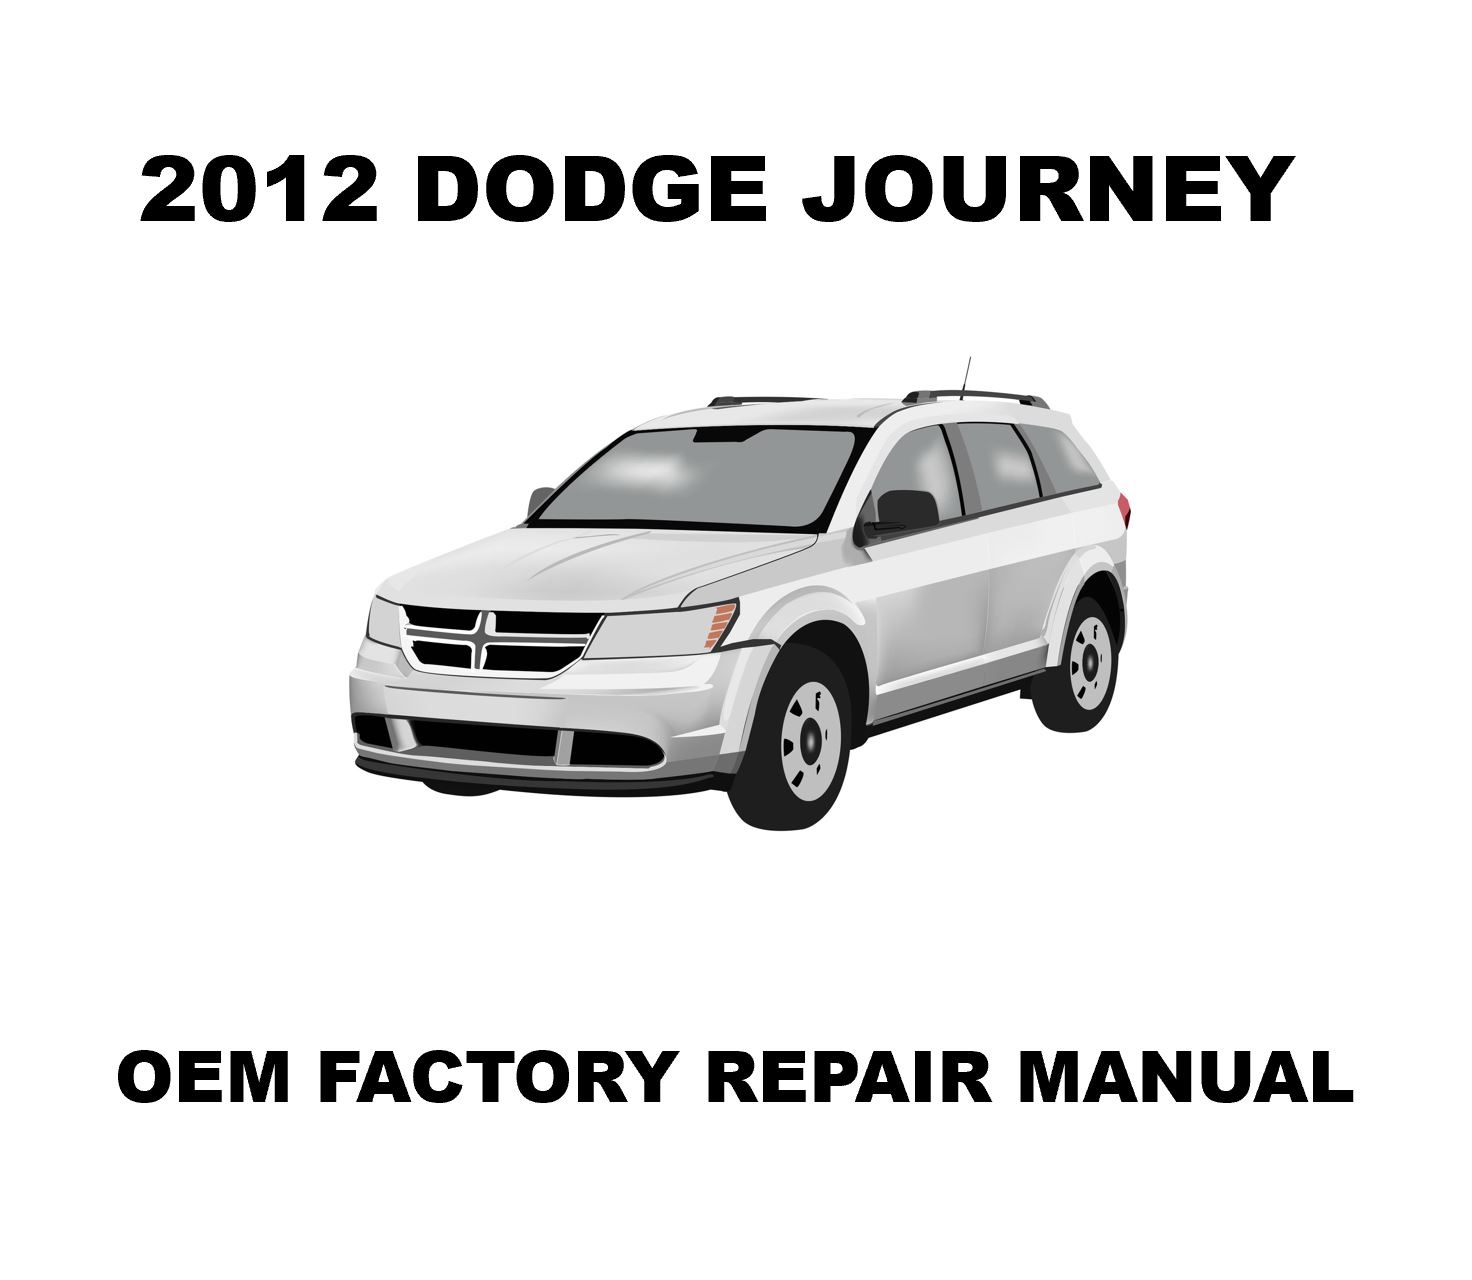 2012_dodge_journey_repair_manual_1472